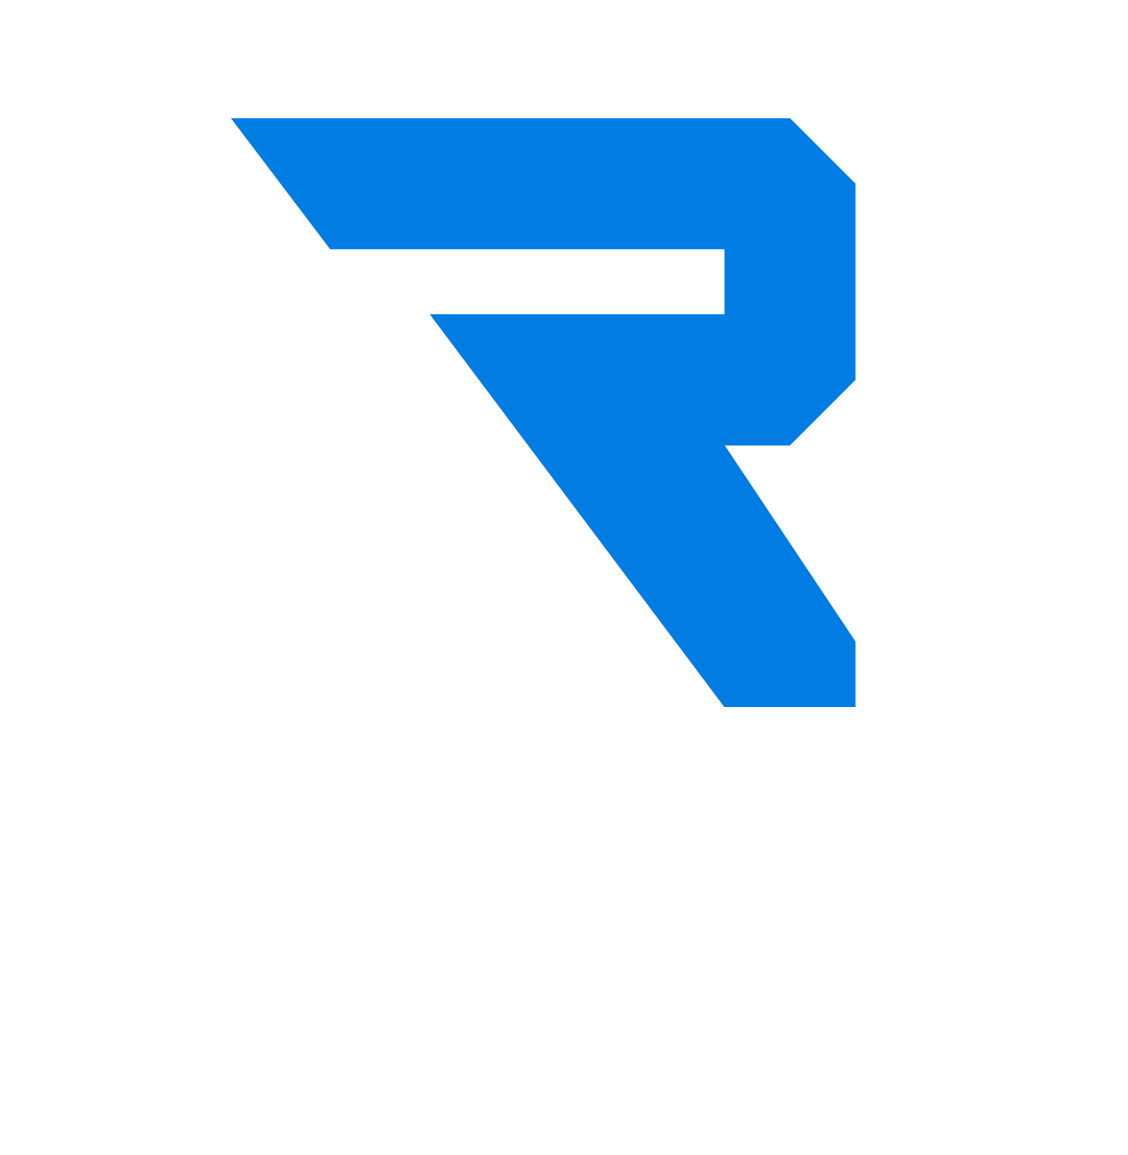 Relentless Church